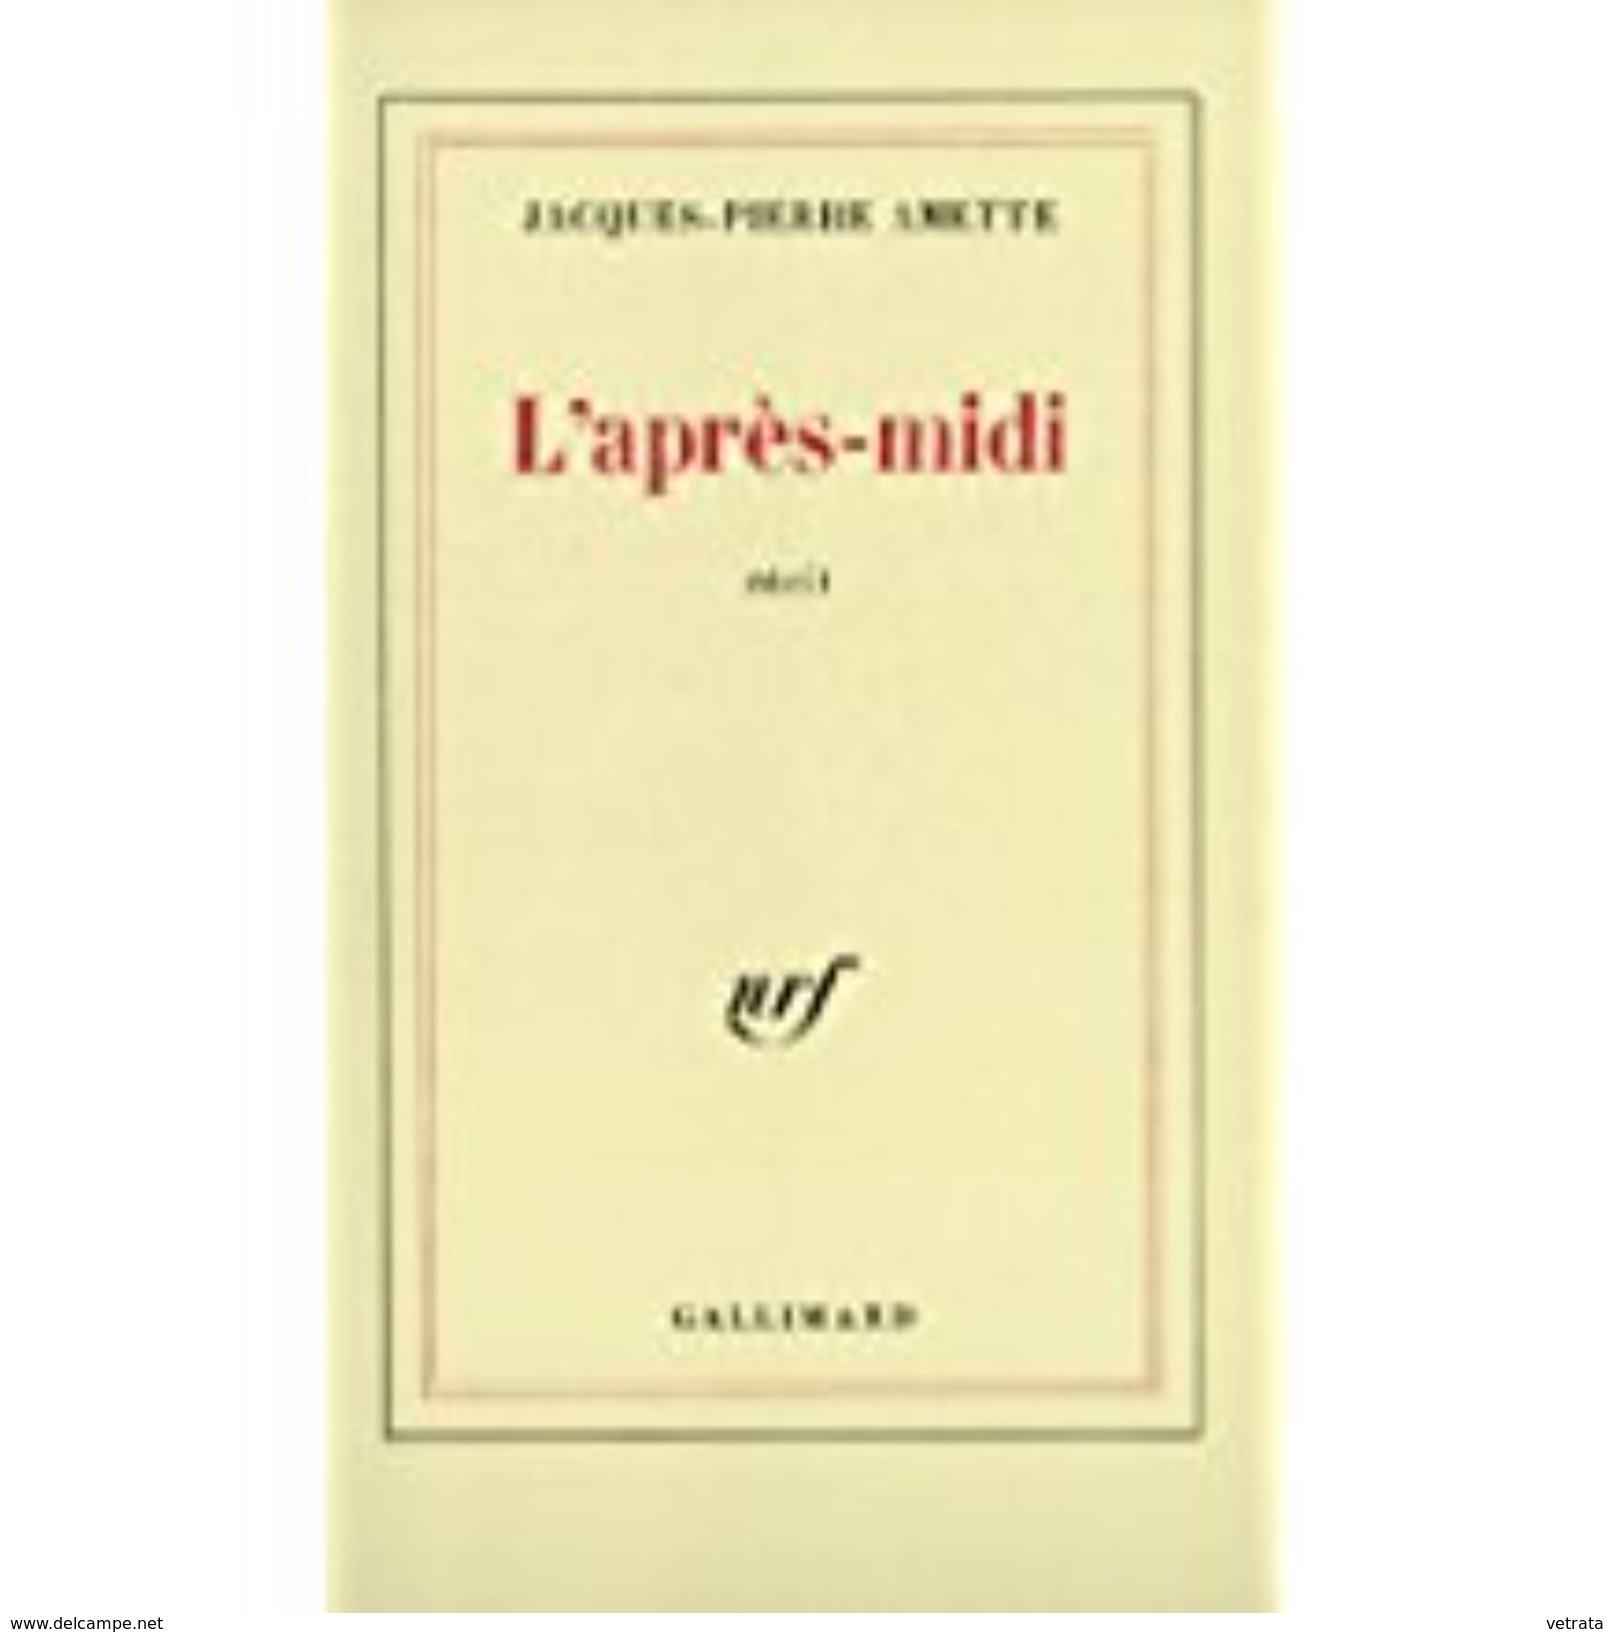 2 Livres De Jacques-Pierre Amette : L'Après-Midi (Gallimard) - La Peau Du Monde (Seuil) - Bücherpakete